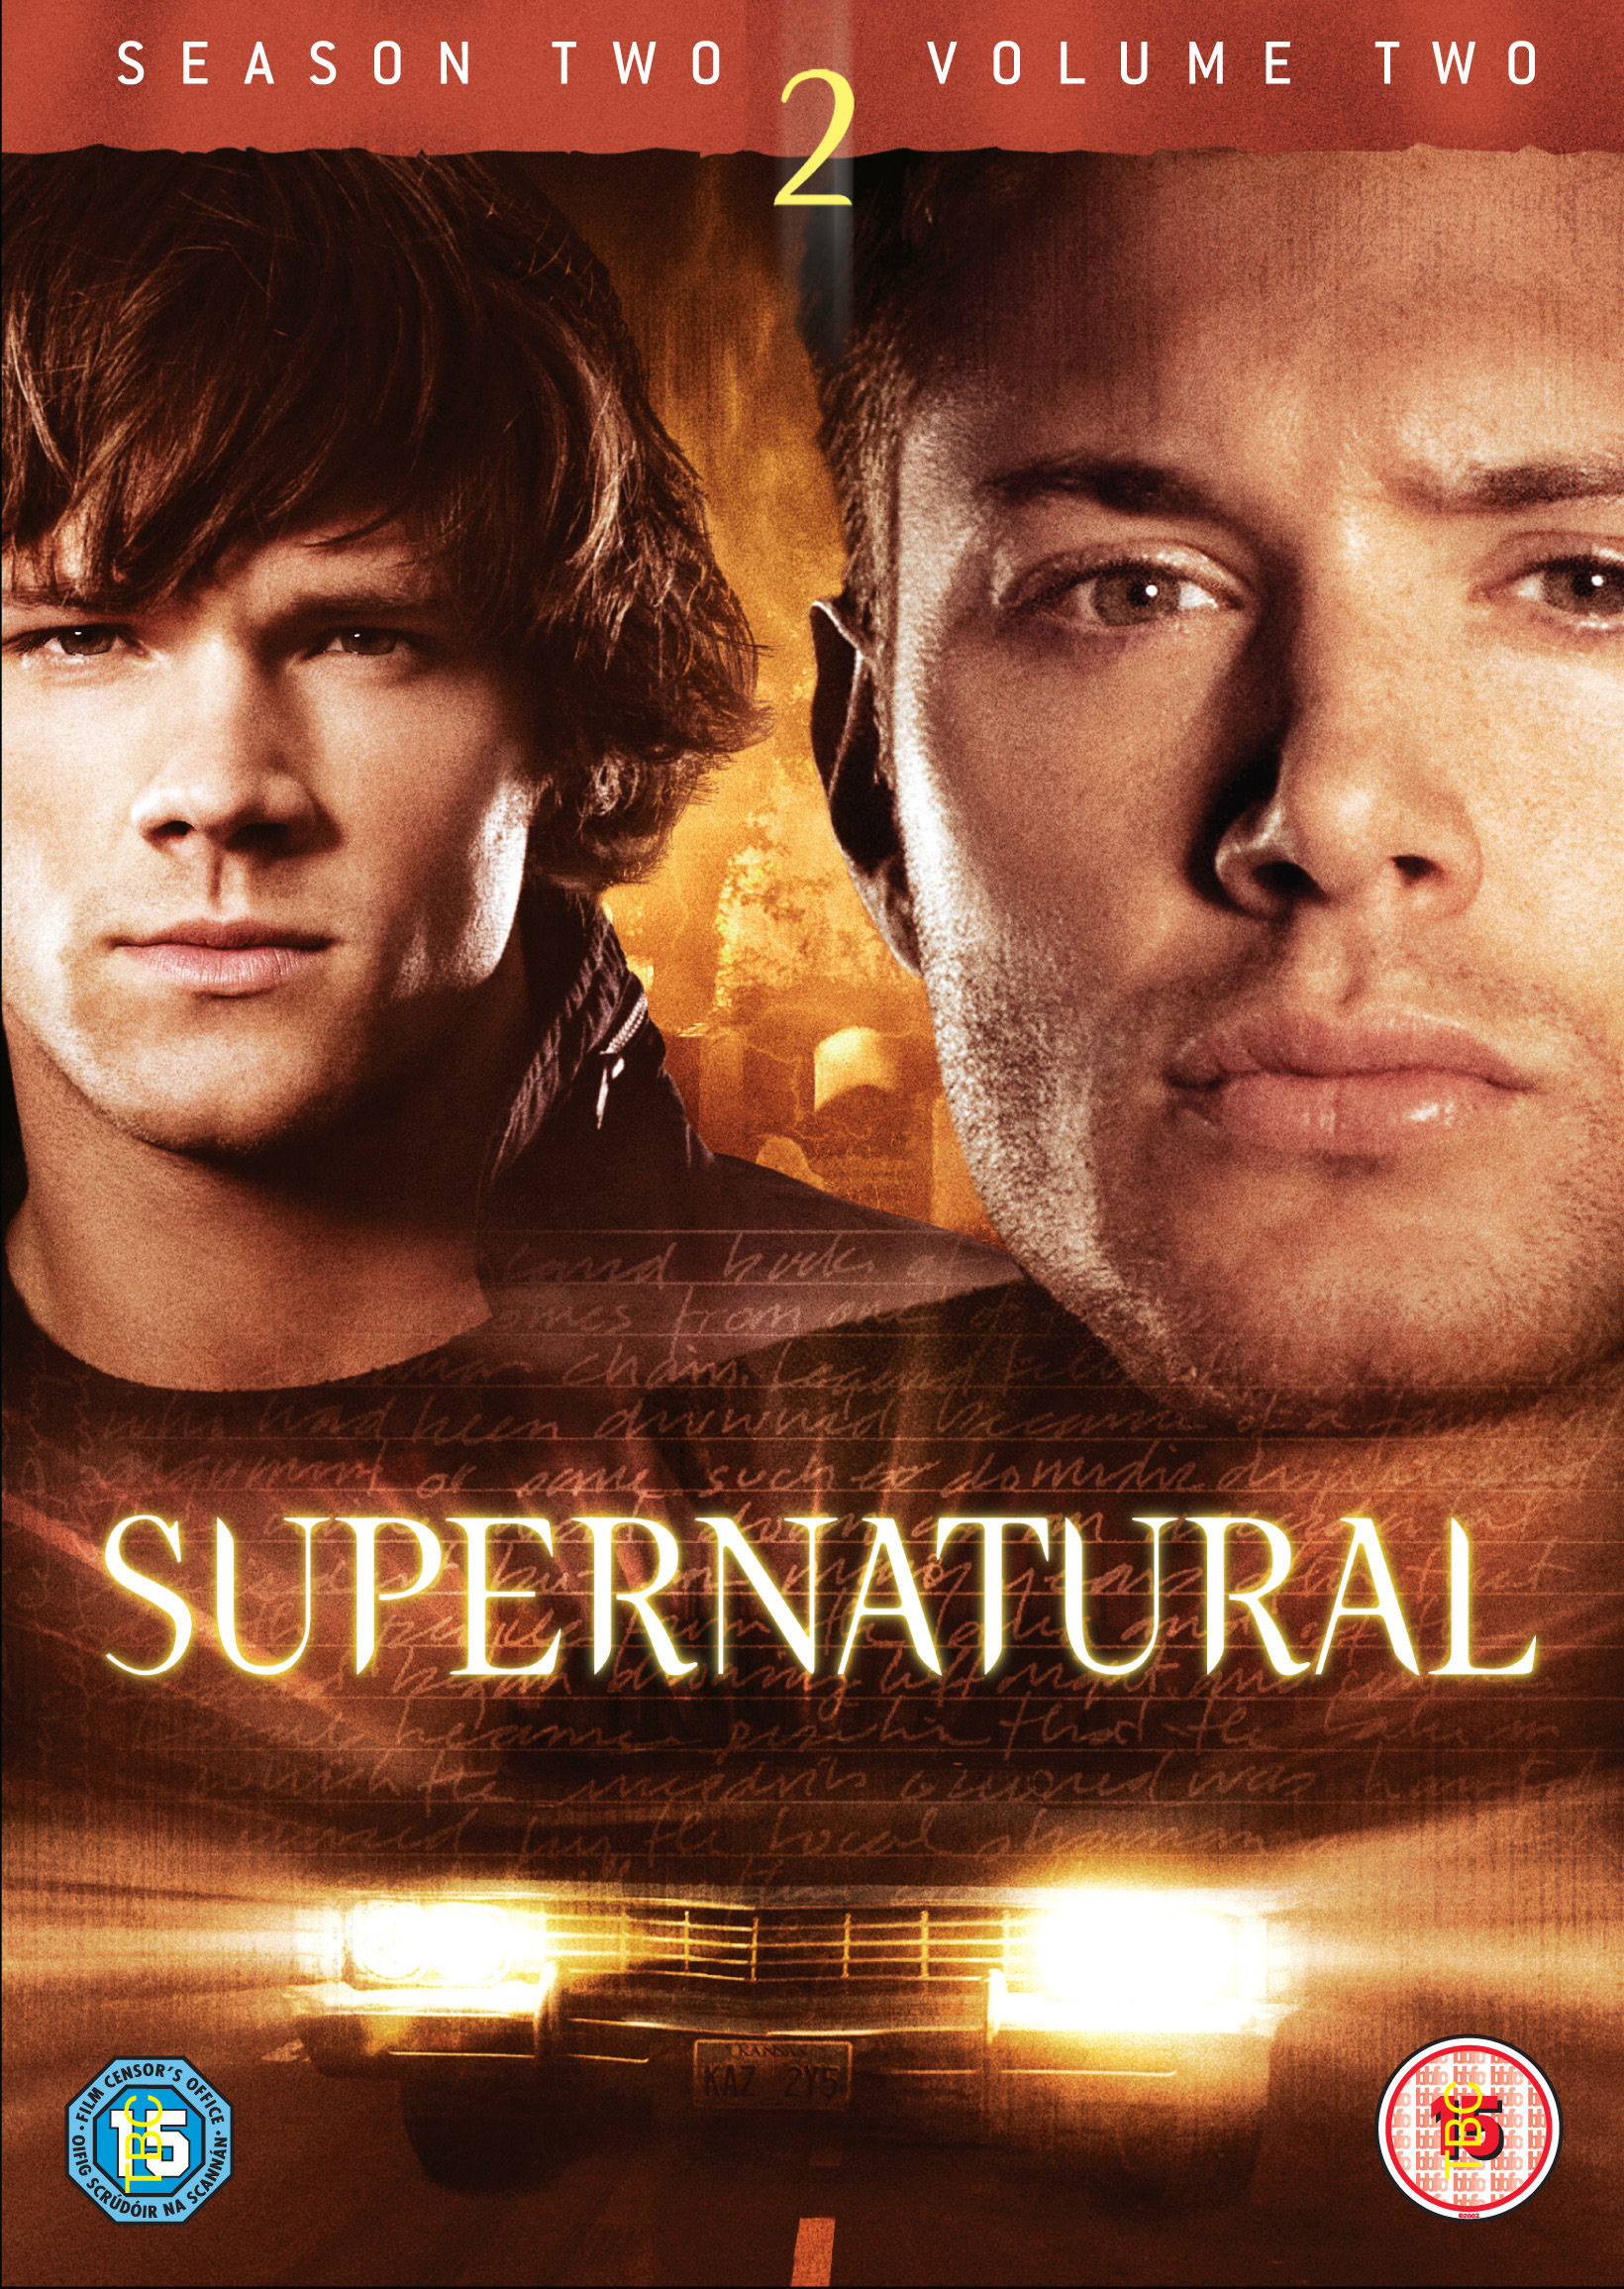 Supernatural Season 2 movie